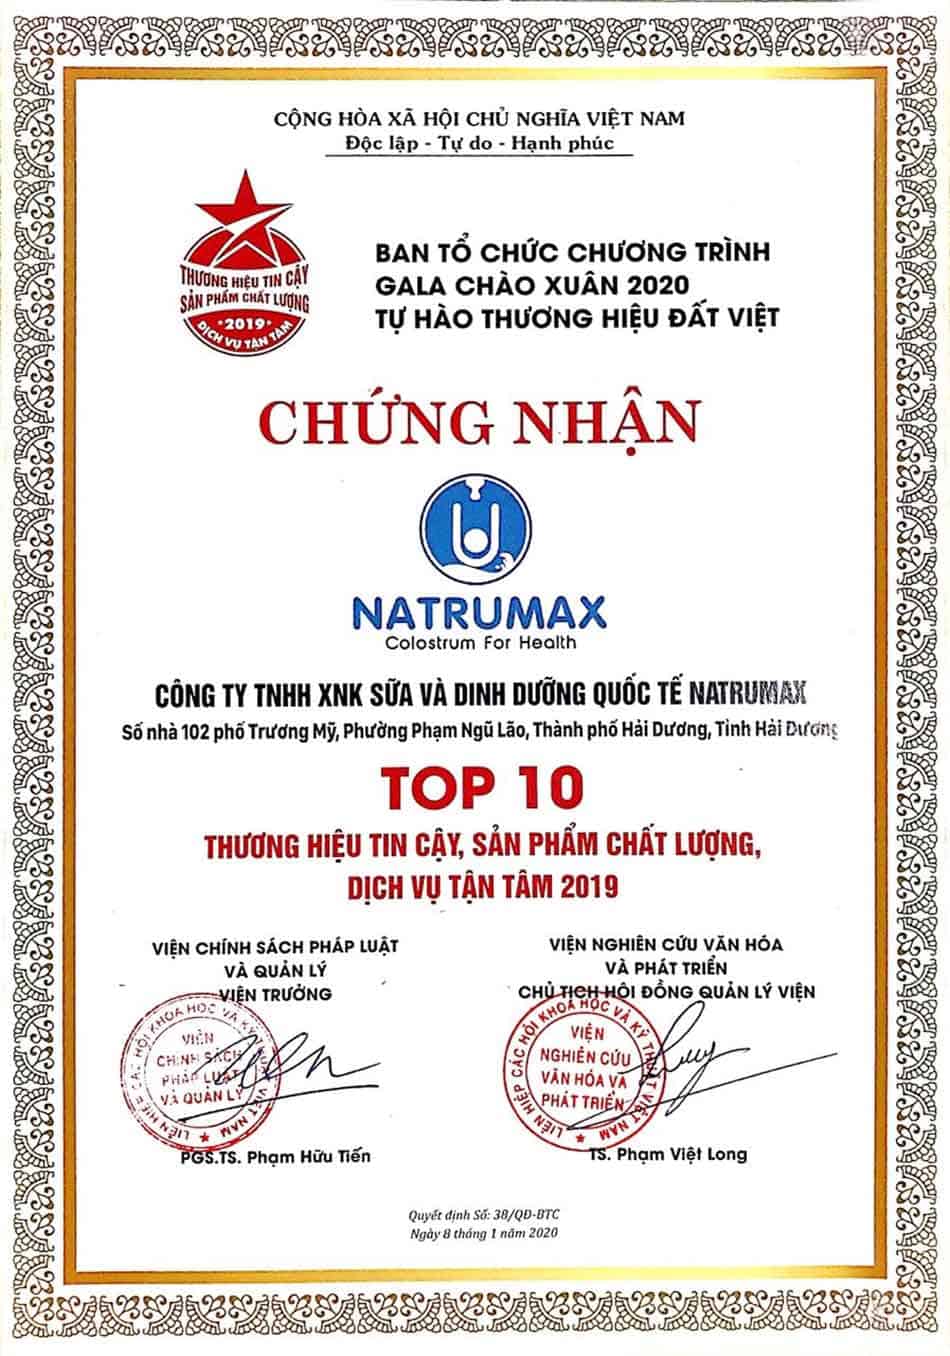 Công ty TNHH Sữa và Dinh dưỡng Quốc tế Natrumax được chứng nhận TOP 10 Thương hiệu tin cậy